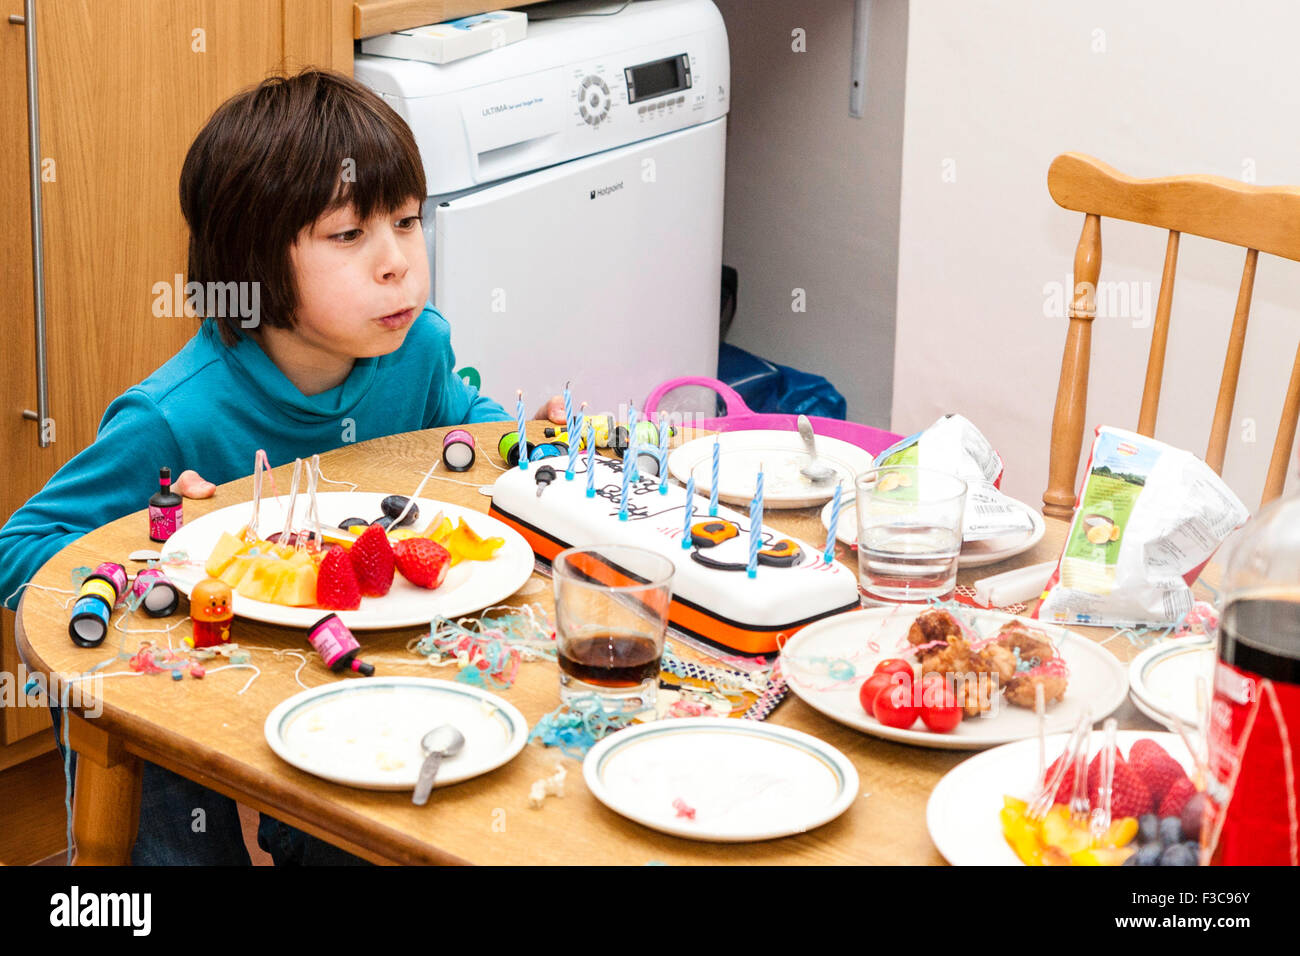 L'origine ethnique mixte (Japonais, Anglais) garçon de 11 ans assis en tête de table de cuisine soufflé les bougies sur le gâteau d'anniversaire. D'autres aliments et boissons. Banque D'Images